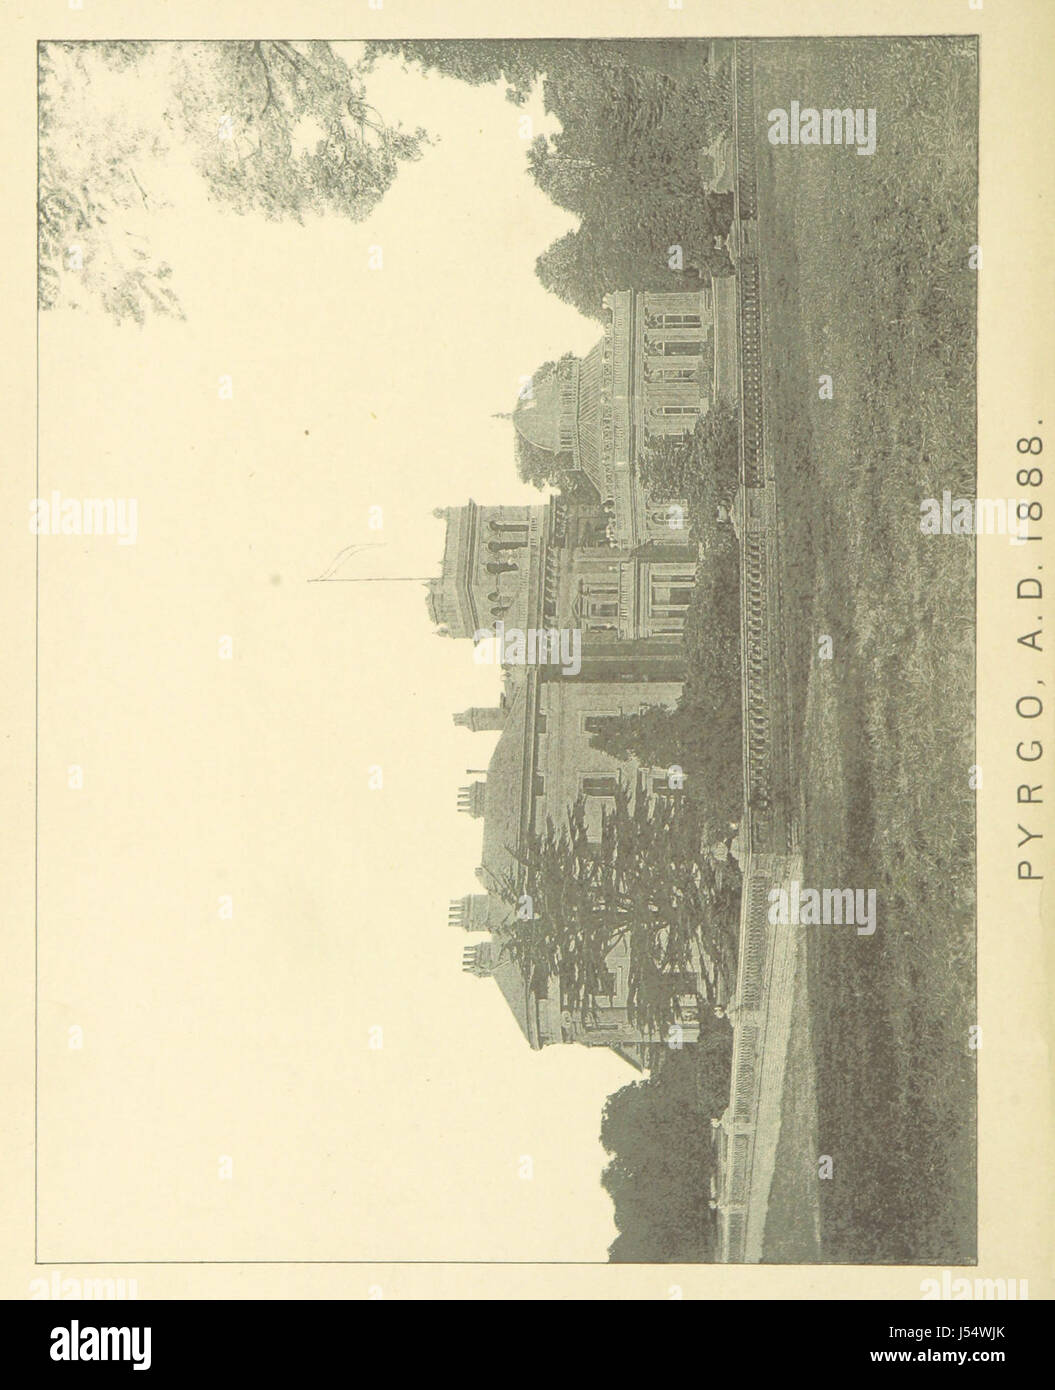 Bild von Seite 6 von "jährlichen Aufzeichnungen des Pyrgo Park, Havering Atte Bower, in der Grafschaft Essex von 946 bis 1888... Extrahiert und zusammengestellt von M. Browne " Stockfoto